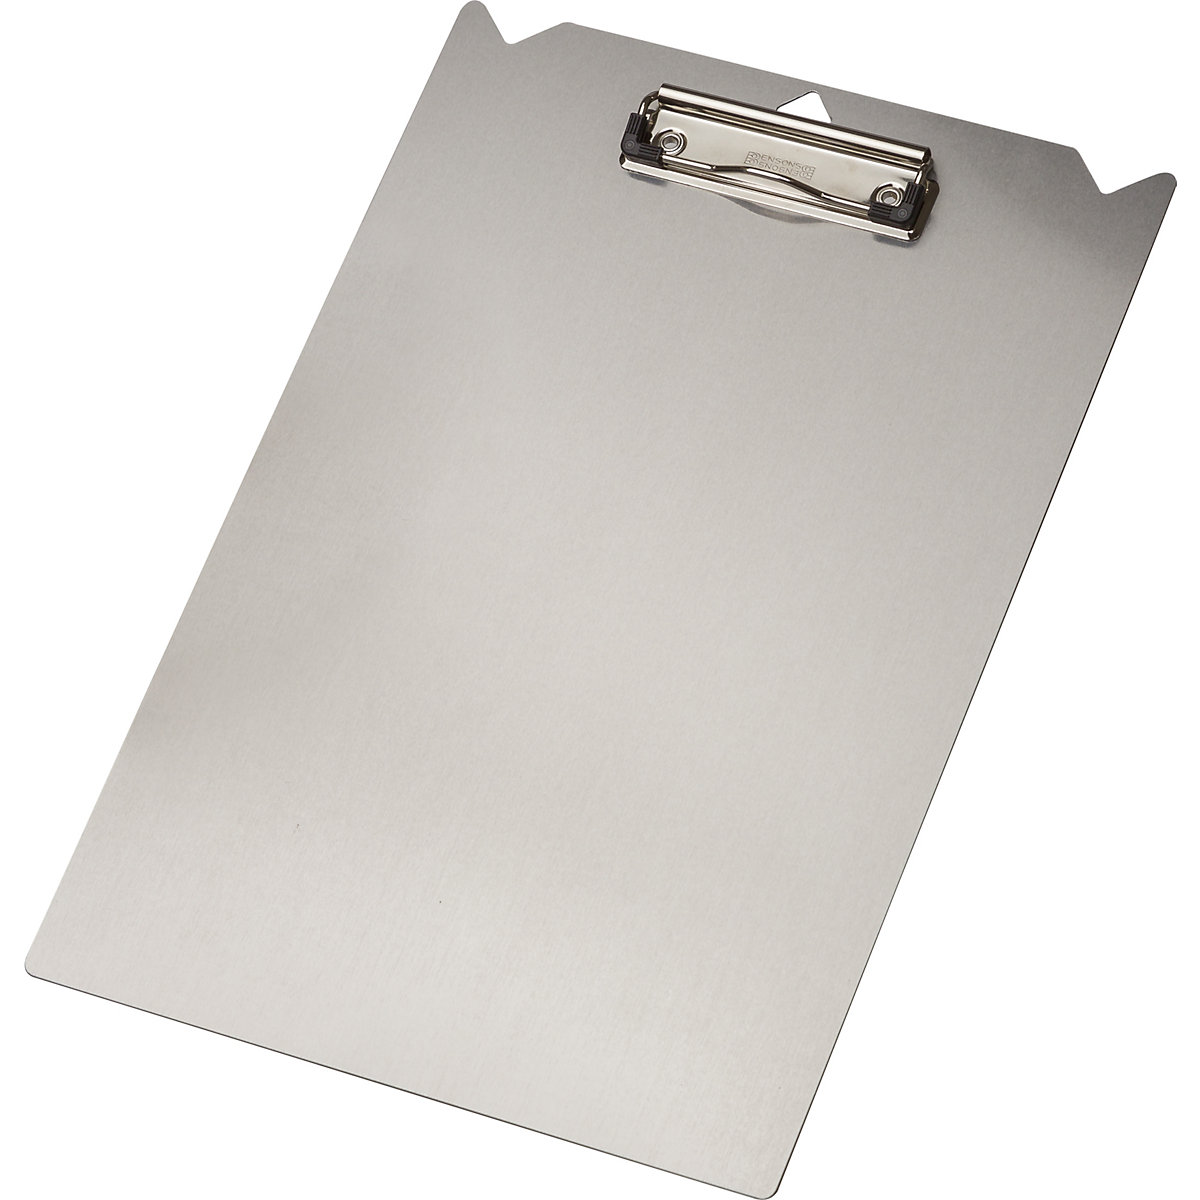 Aluminium clipboard - Tarifold